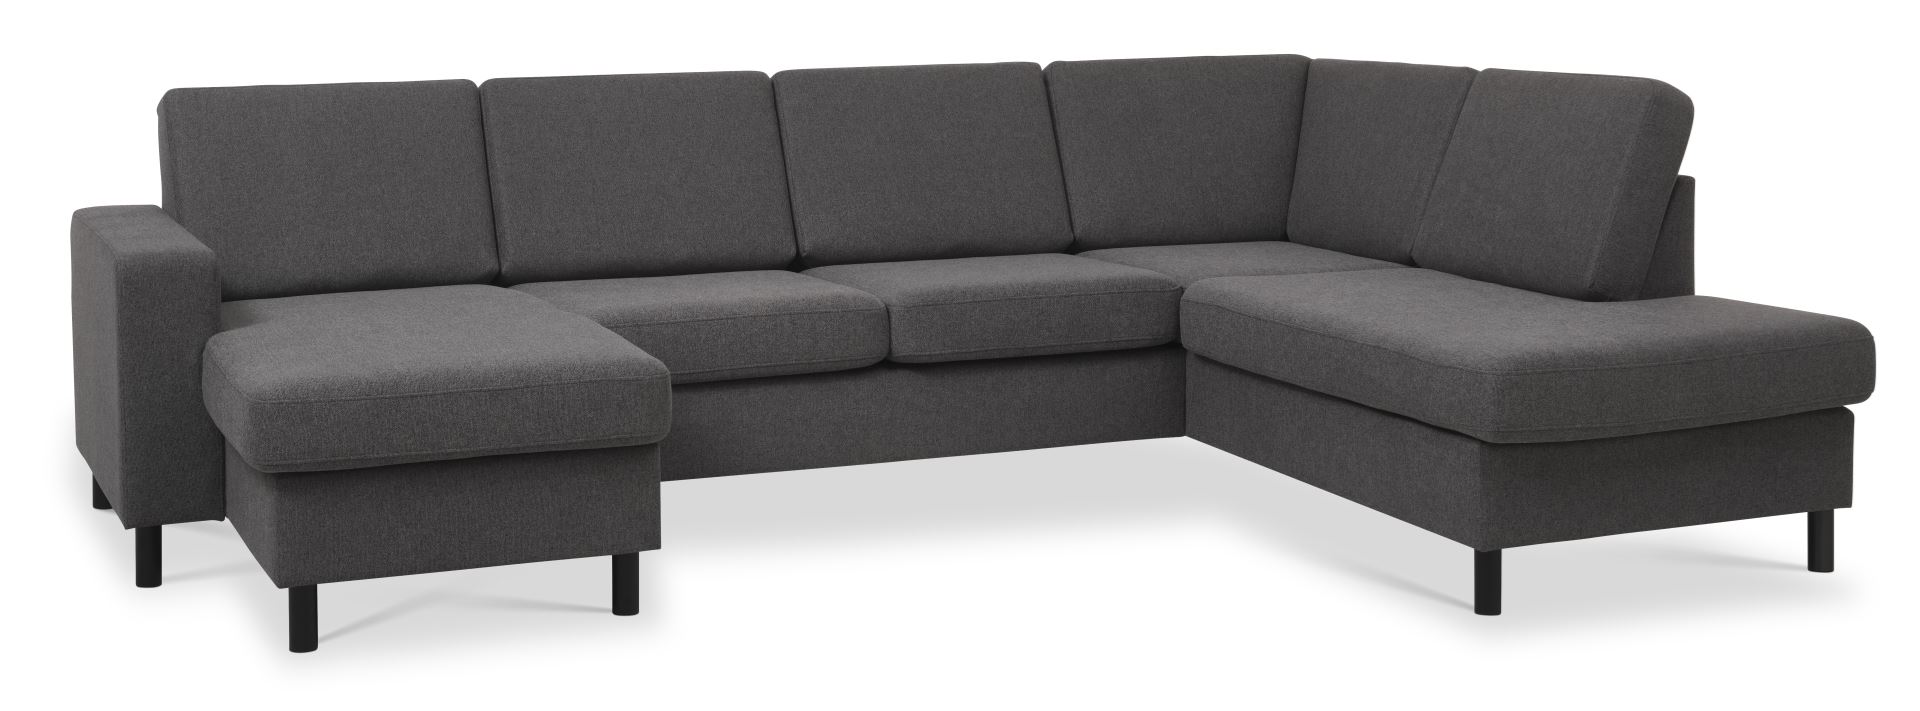 Pan set 5 U OE right sofa med chaiselong - antracitgrå polyester stof og sort træ